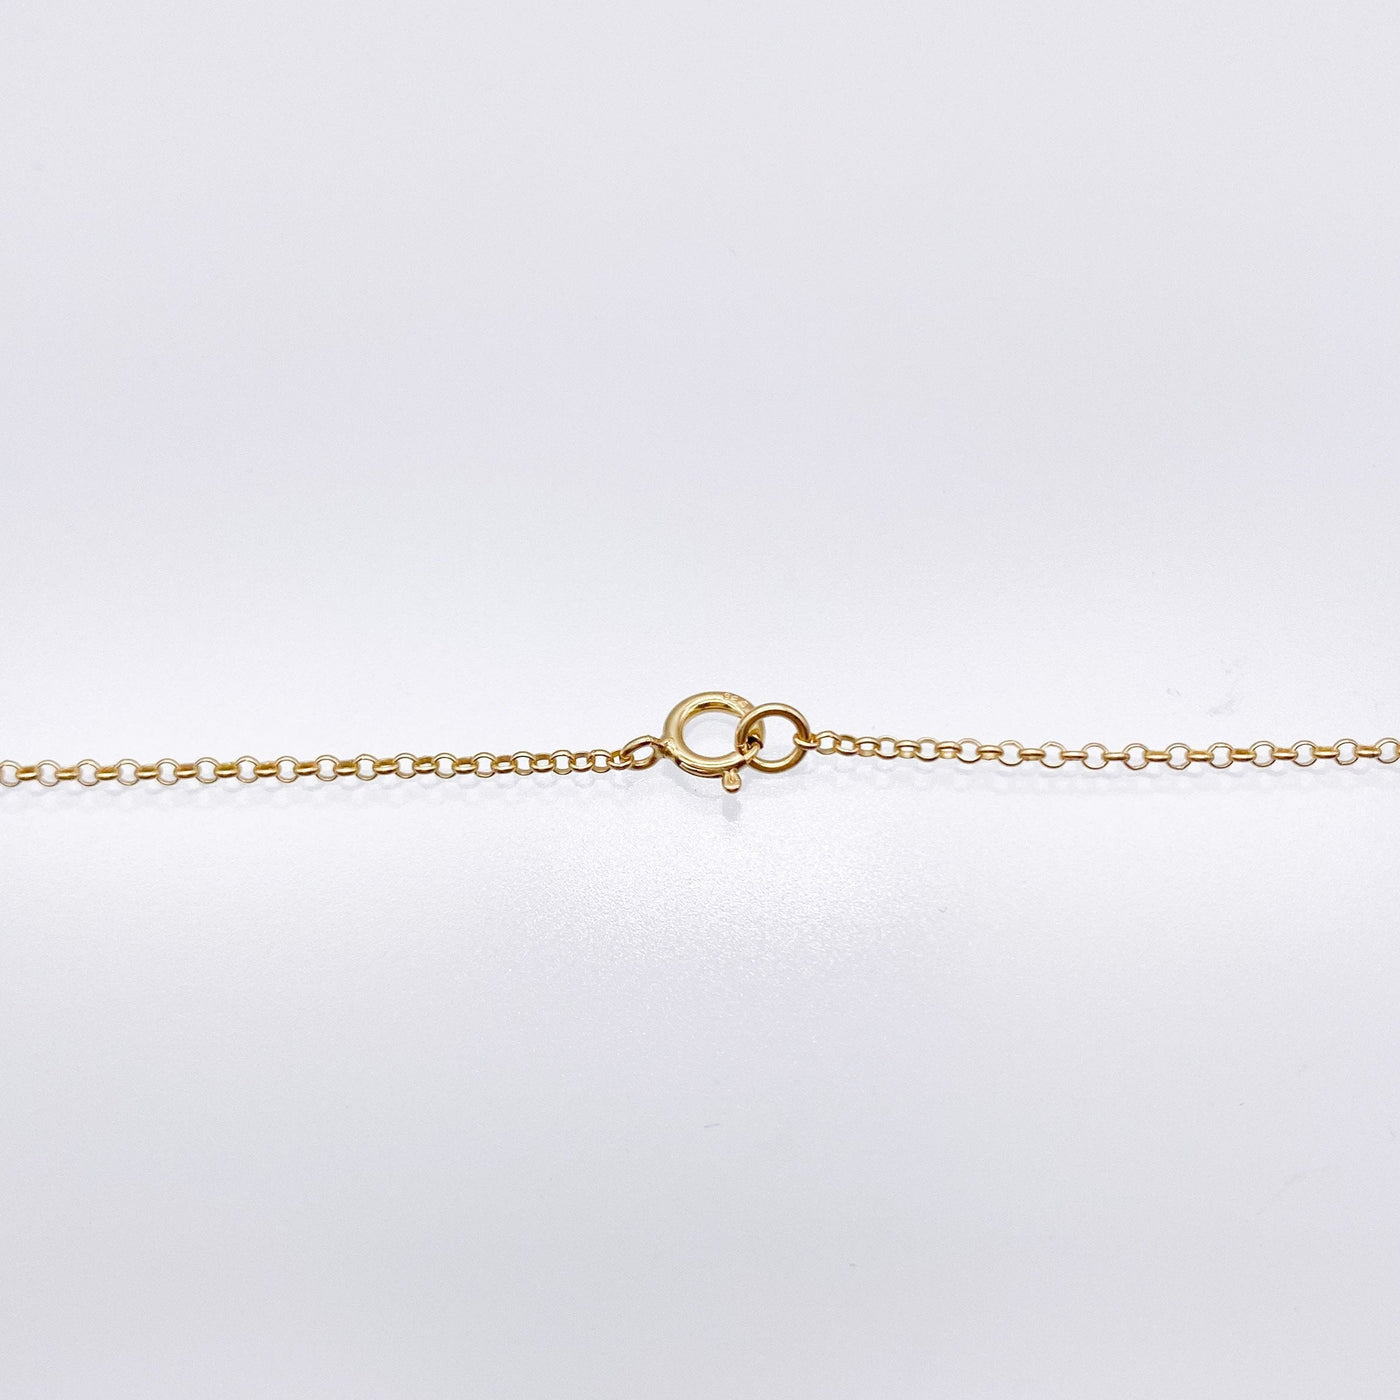 Small Eye Talisman Necklace With Zircon Stones-necklace-Barbóra-unigem